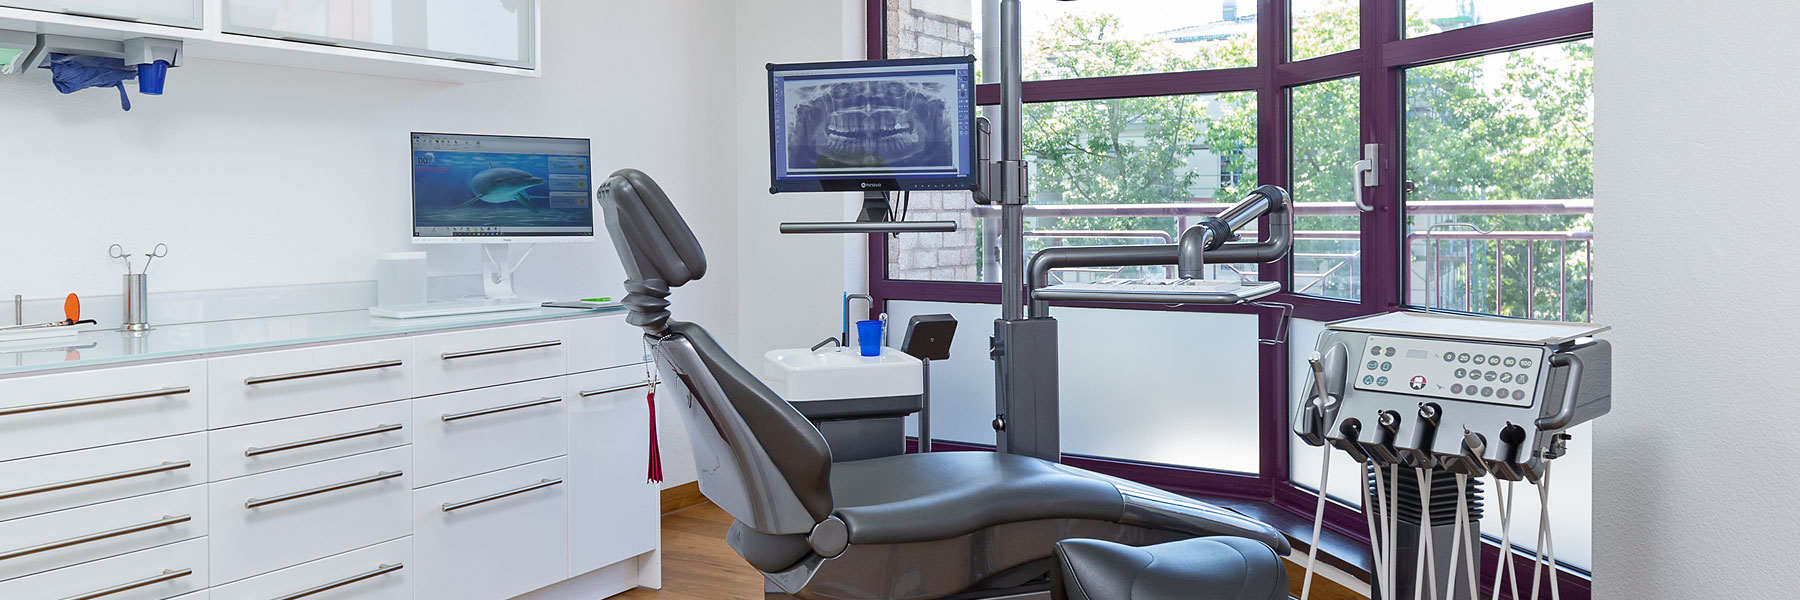 Zahnärztliche Chirurgie mit moderner Ausstattung der Zahnarztpraxis in Langenfeld Dr. Schmidt & Dr. Brackmann-Krifka. Für gesunde Zähne!